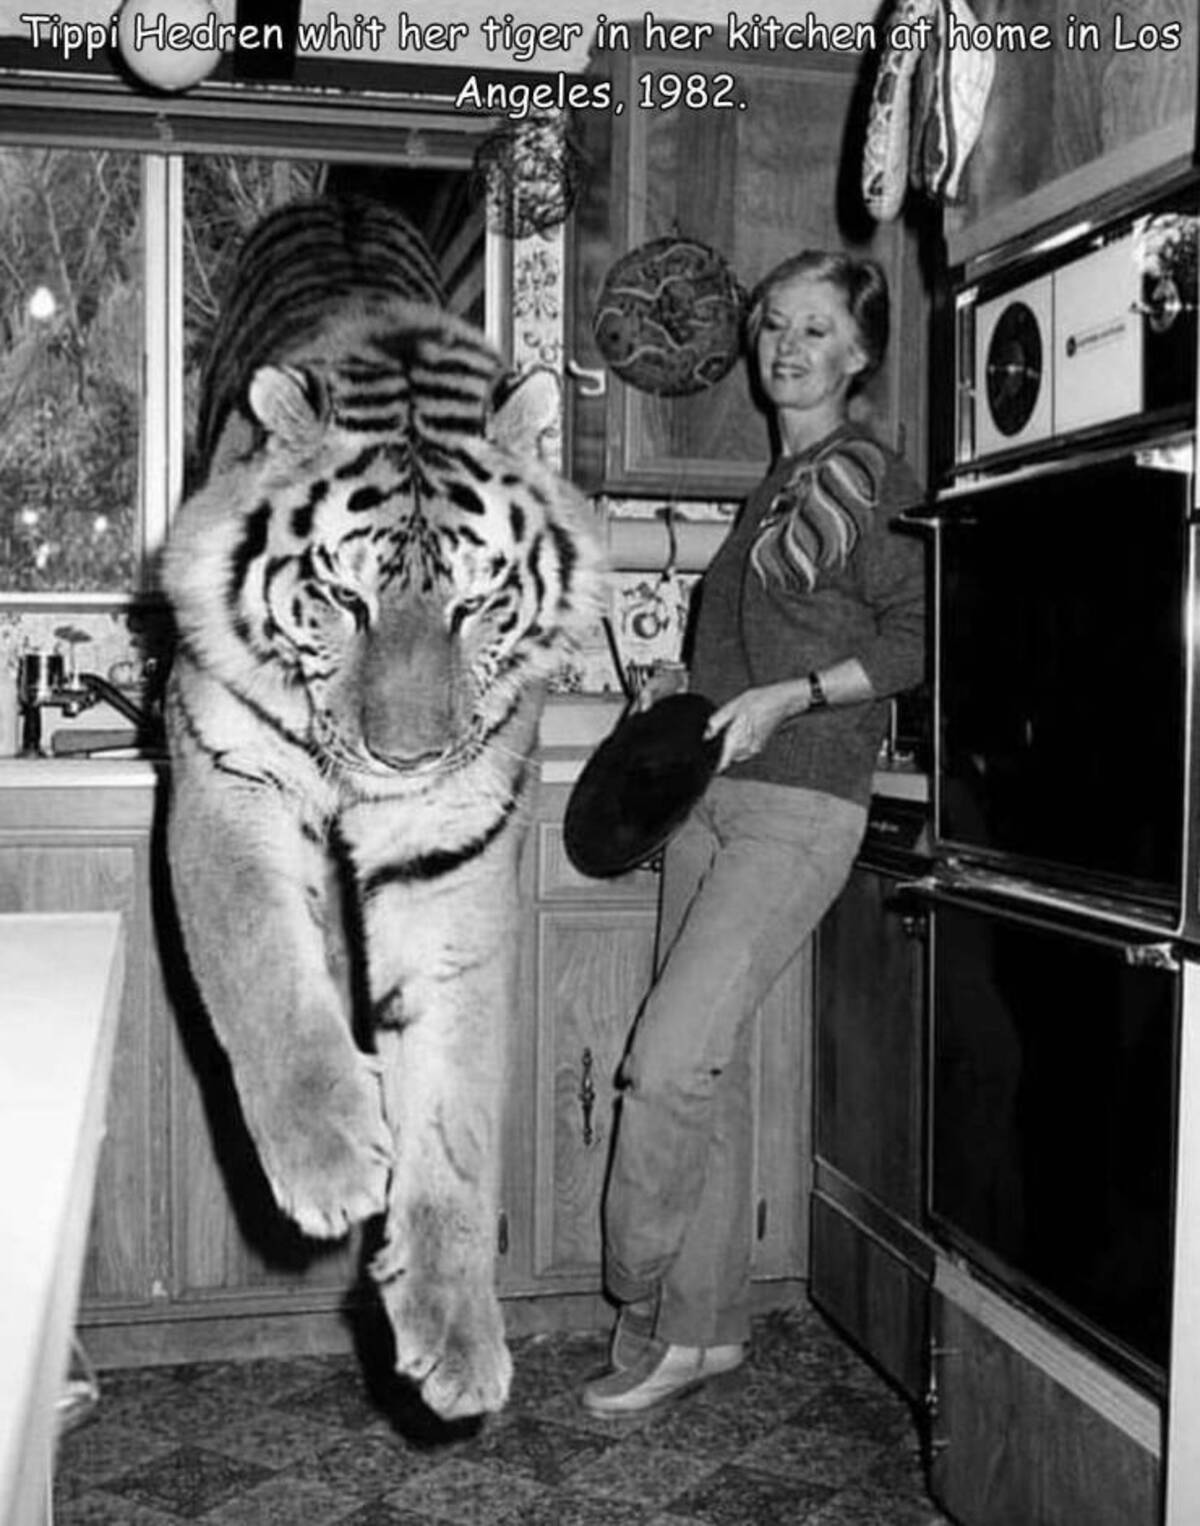 tippi hedren 1980 - Tippi Hedren whit her tiger in her kitchen at home in Los Angeles, 1982.